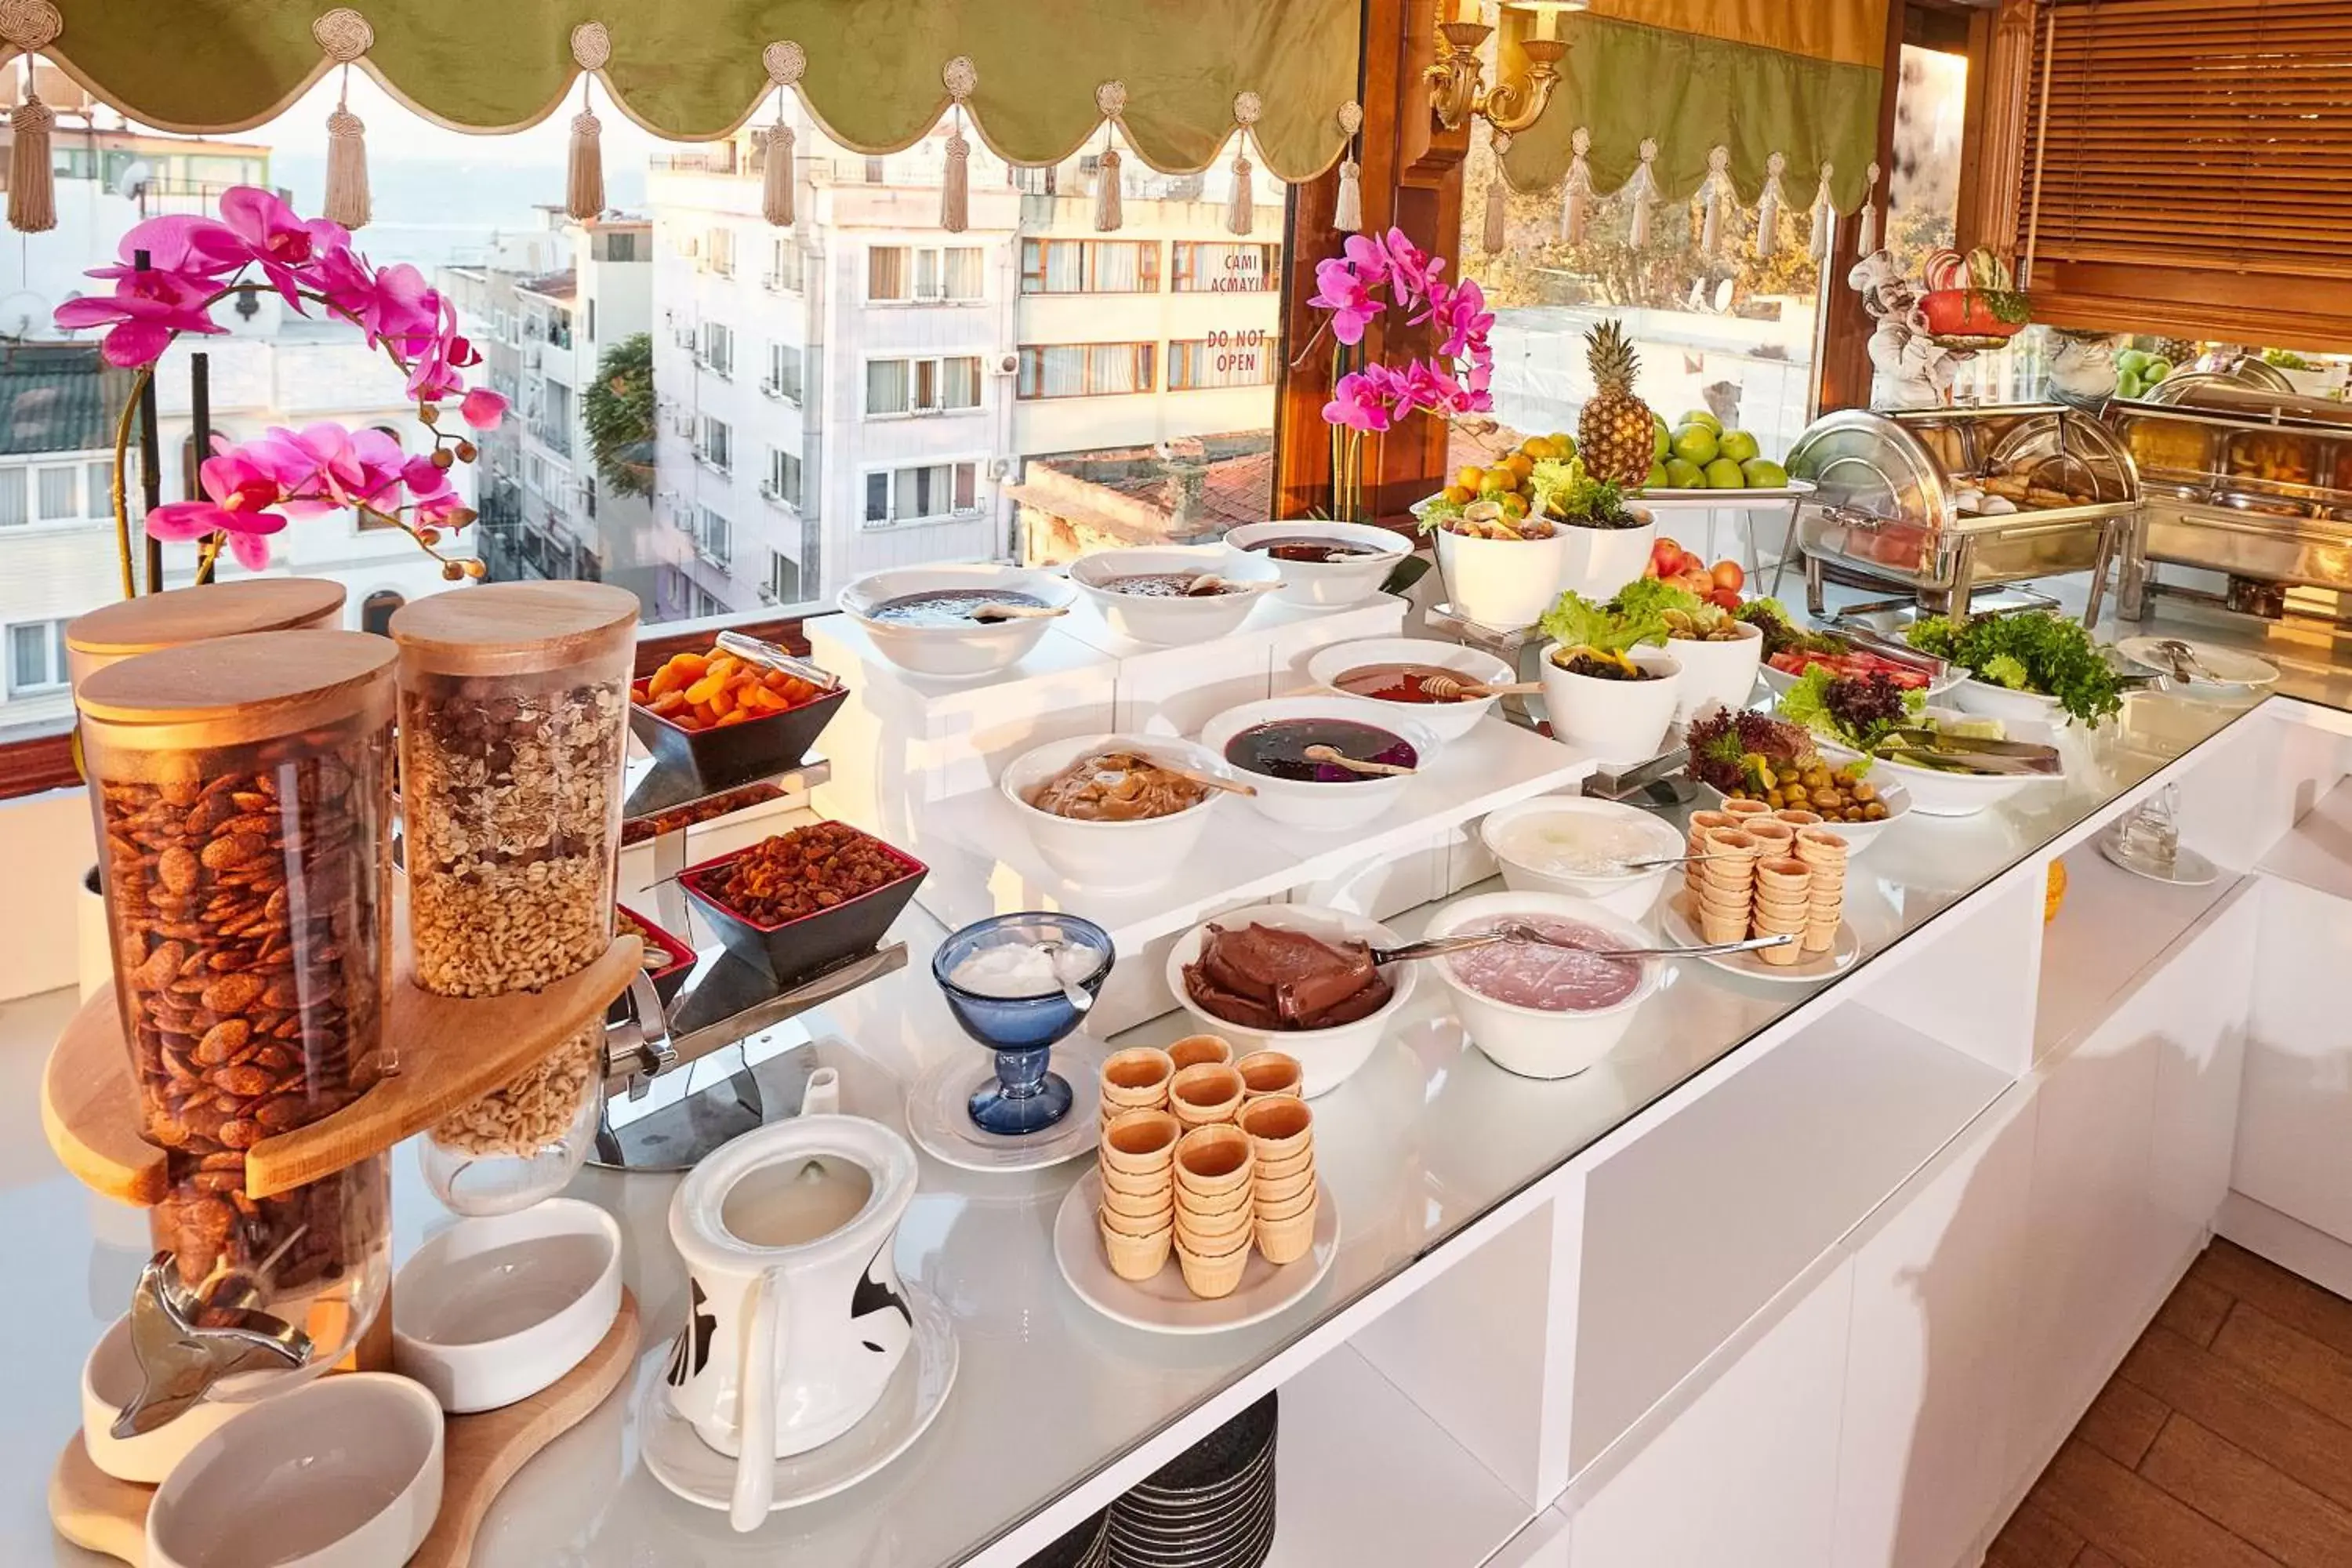 Buffet breakfast in Alzer Hotel